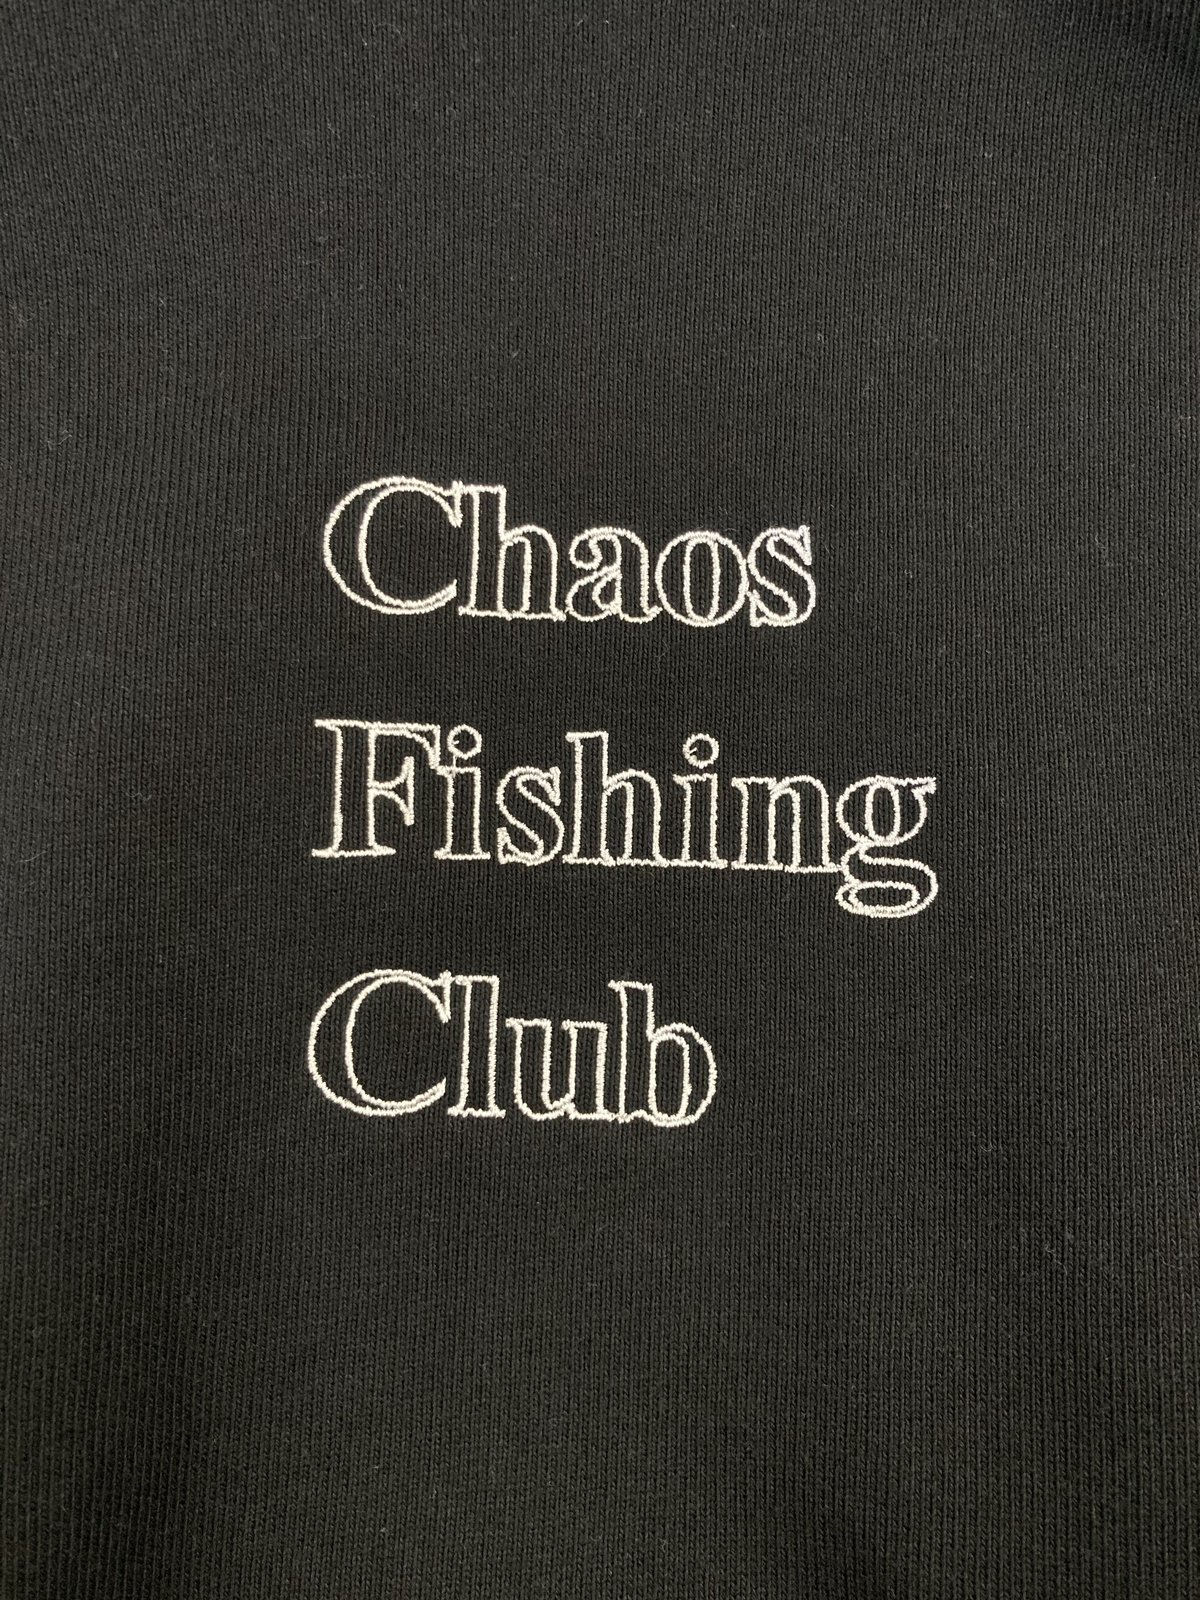 CHAOS FISHING CLUB | カオスフィッシングクラブ | OG LOGO HOO...